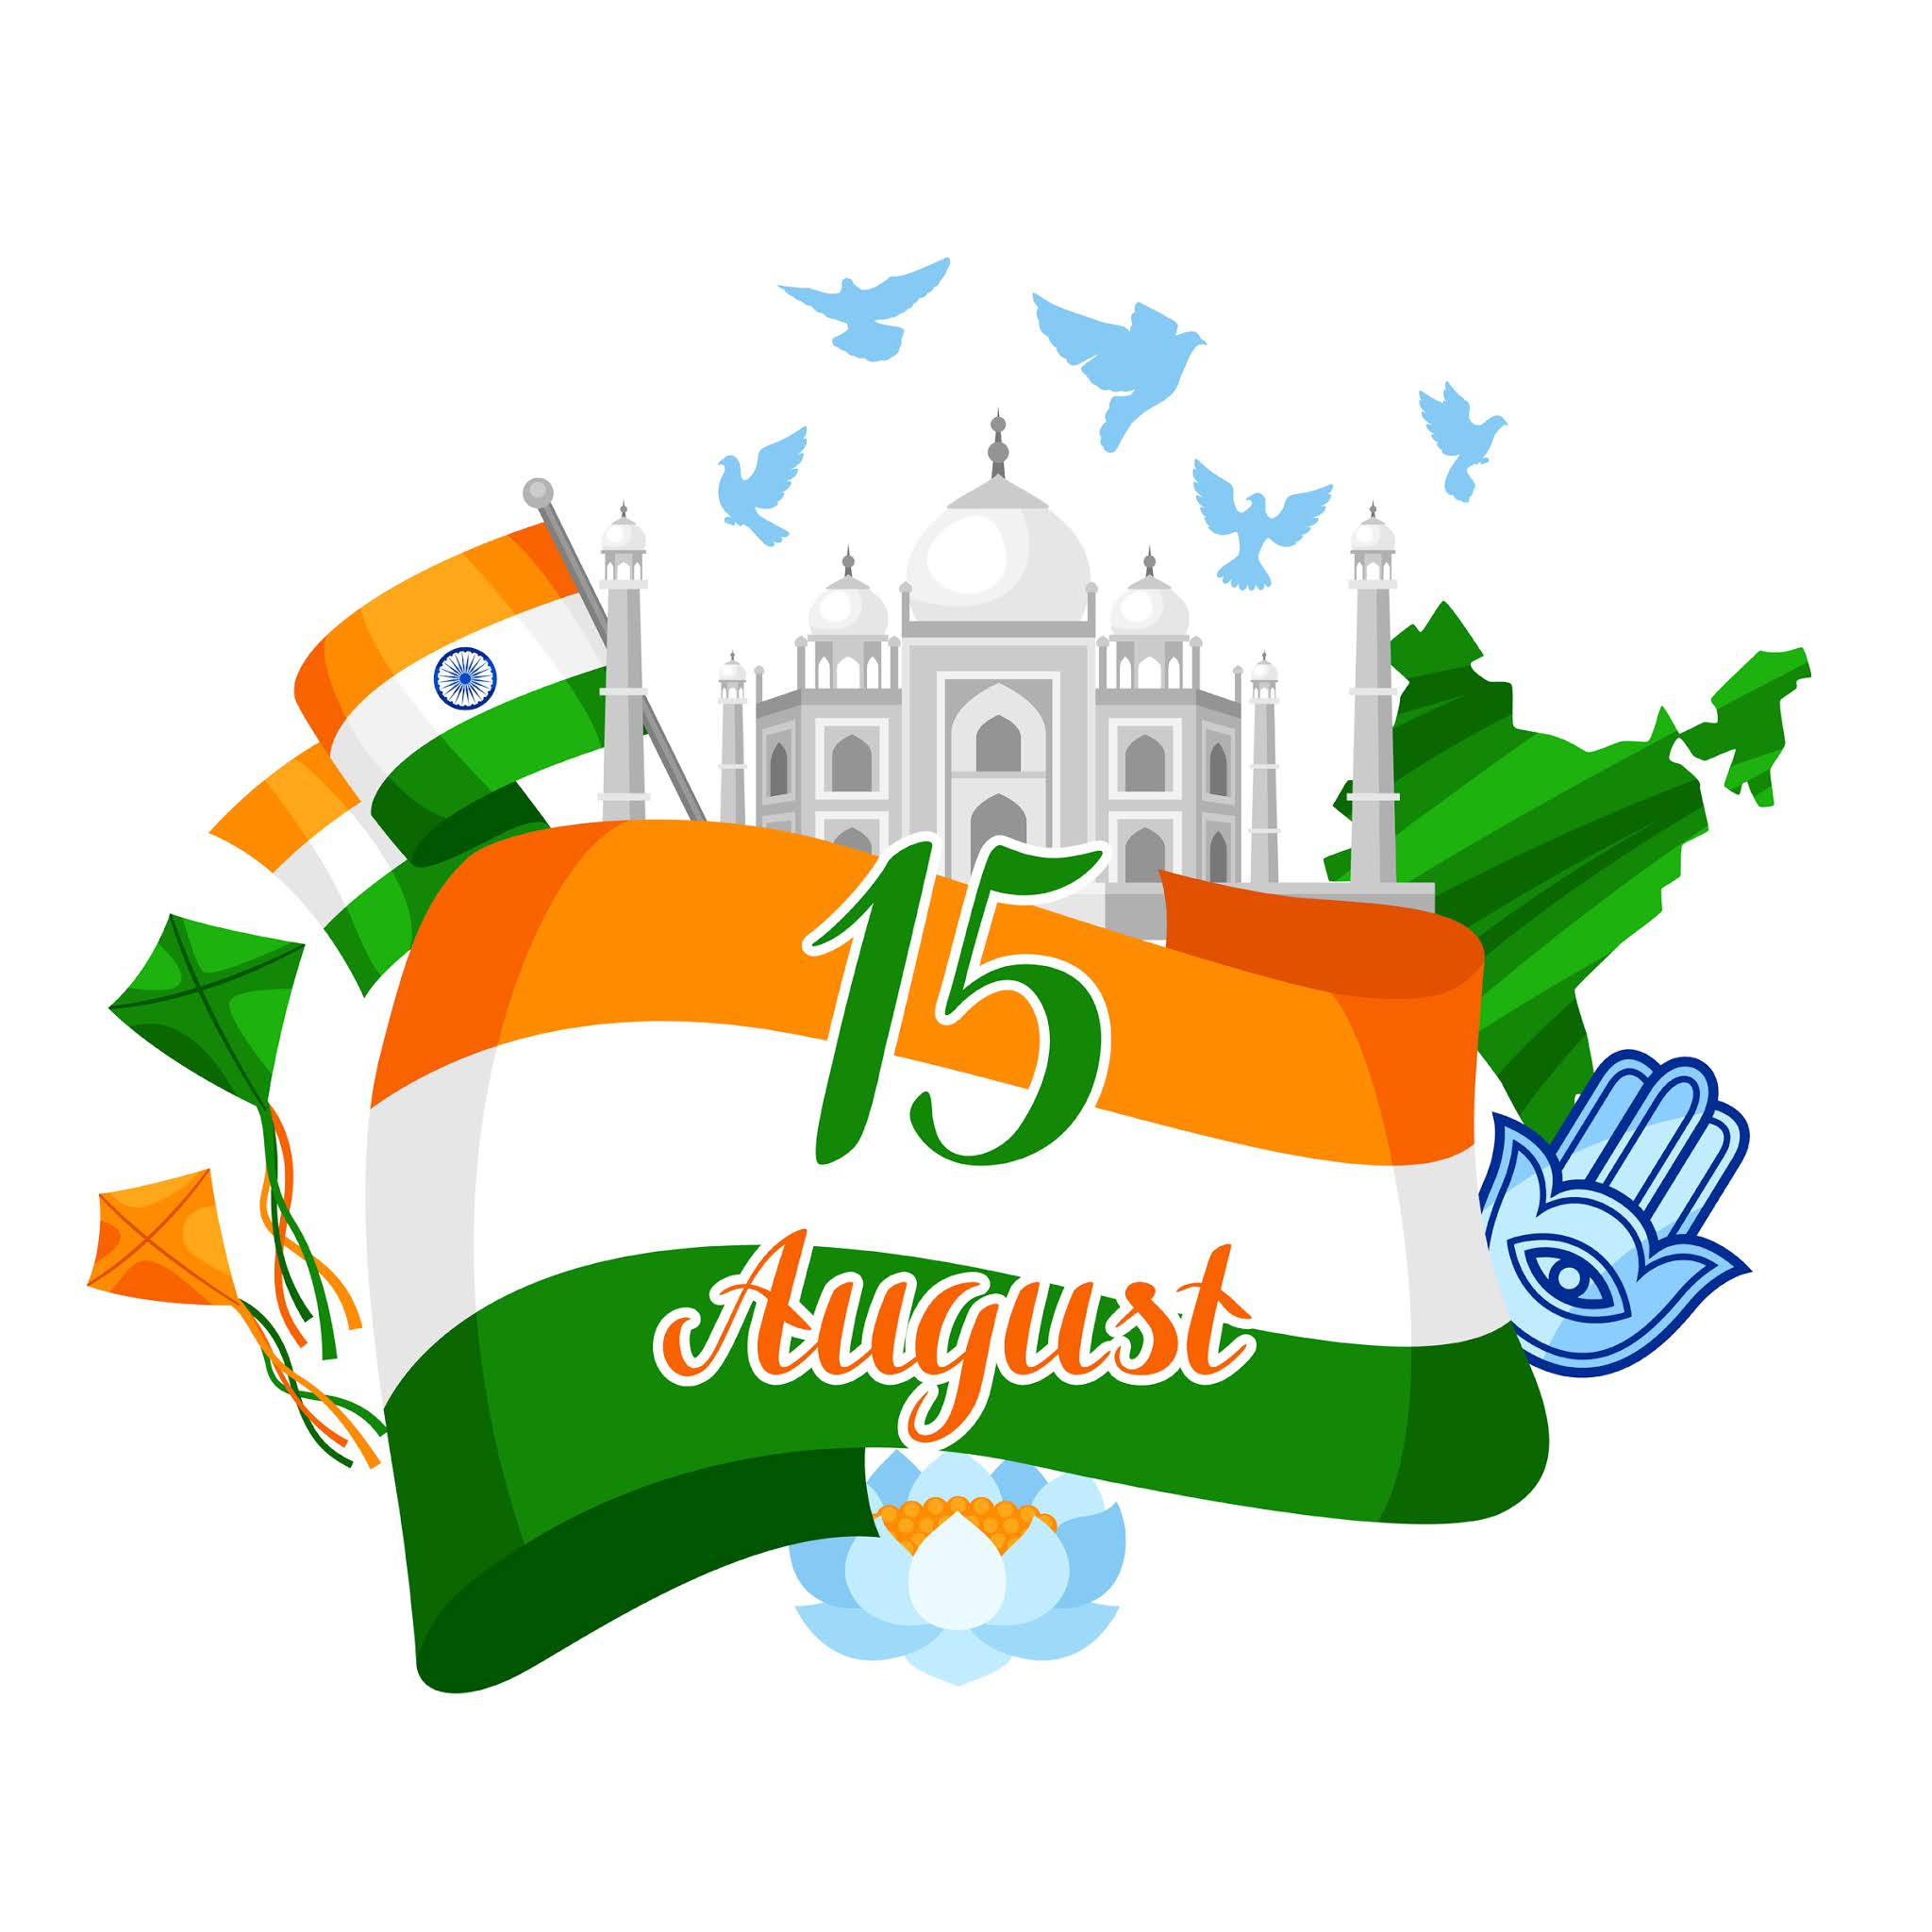 15 го апреля. День независимости Индии открытка. День независимости Индии праздничная открытка. Индия день независимости открытка поздравление. С днем независимости Индии картинки поздравления.